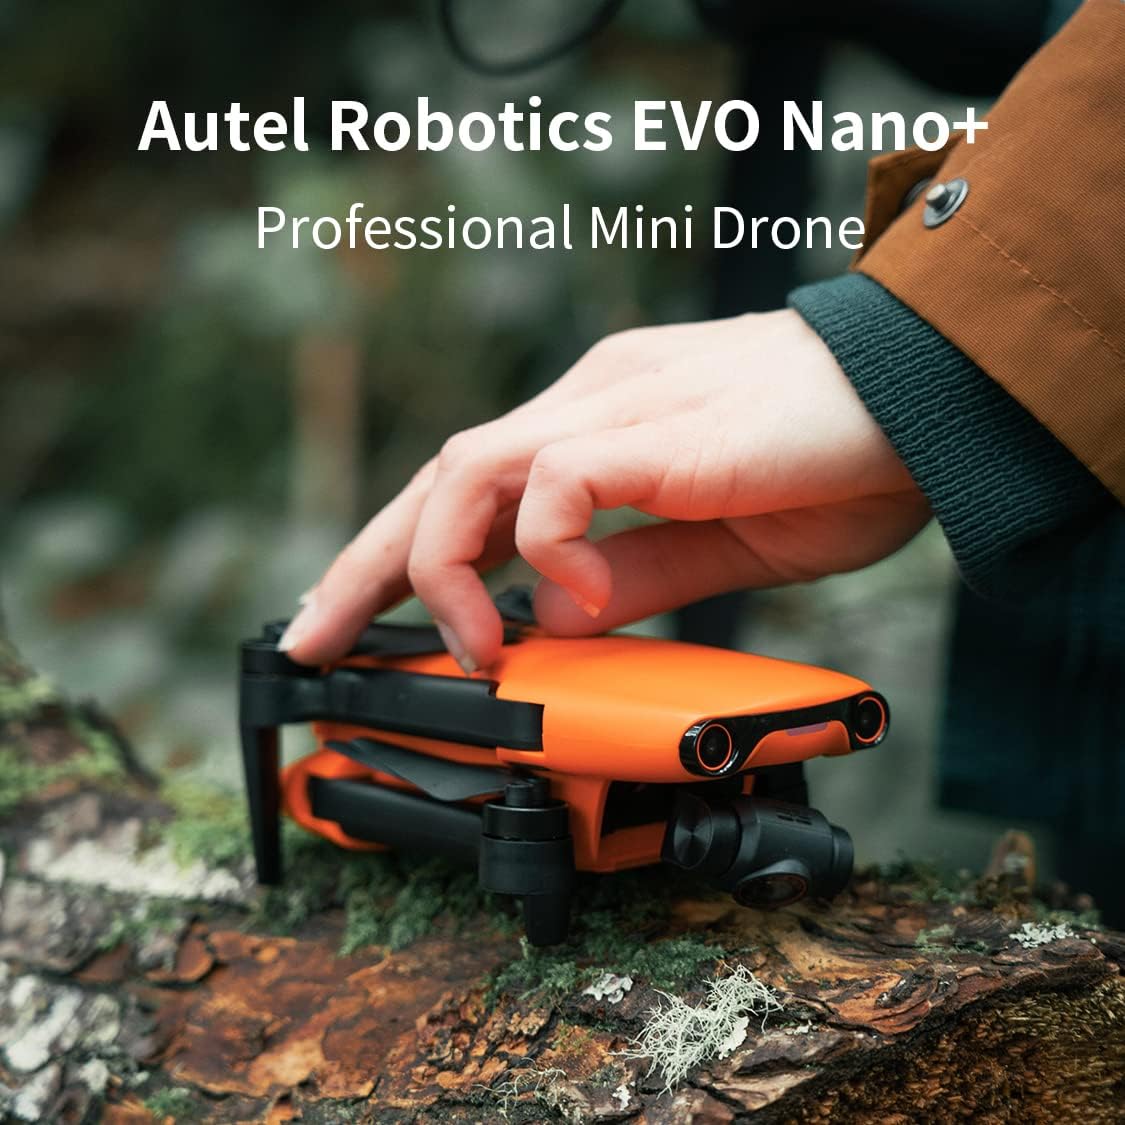 Autel Robotics EVO Nano